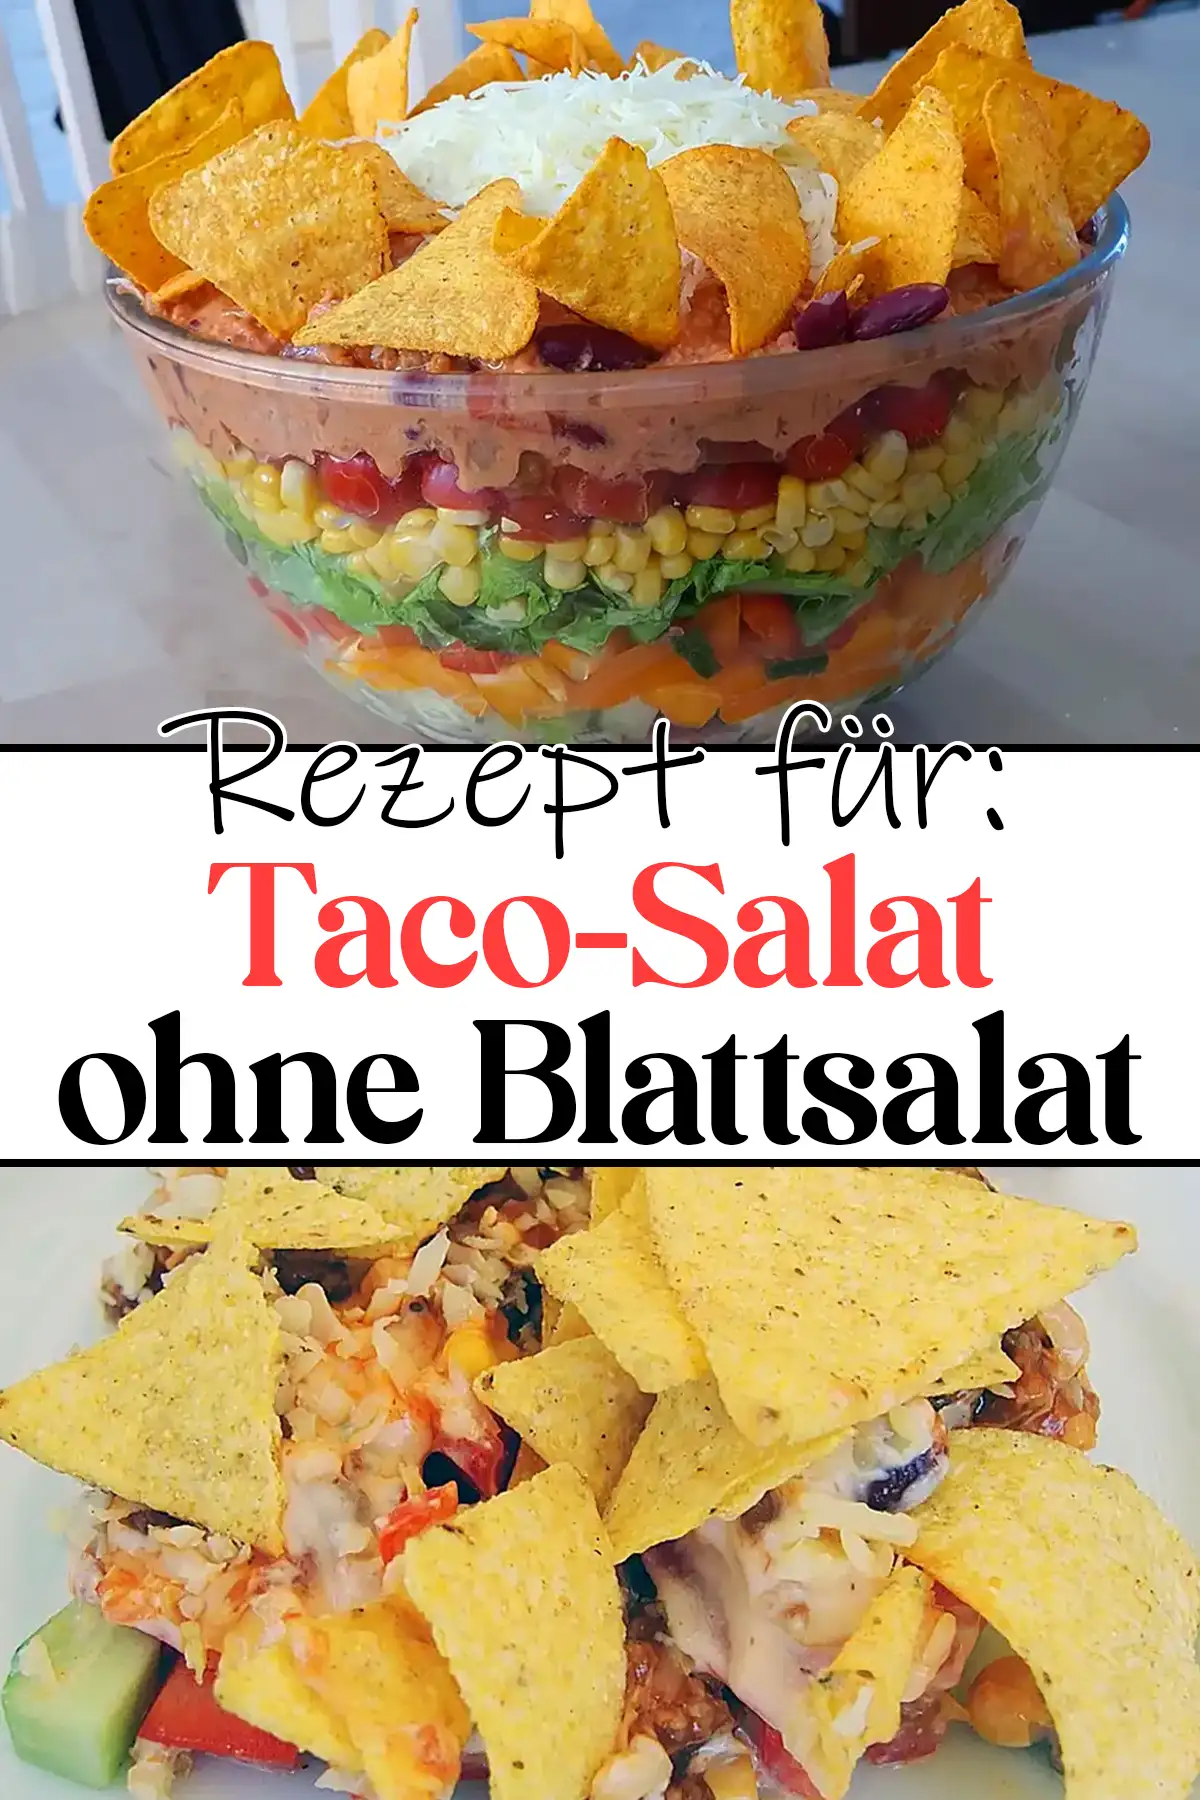 Taco-Salat ohne Blattsalat: Schicht für Schicht Genuss!